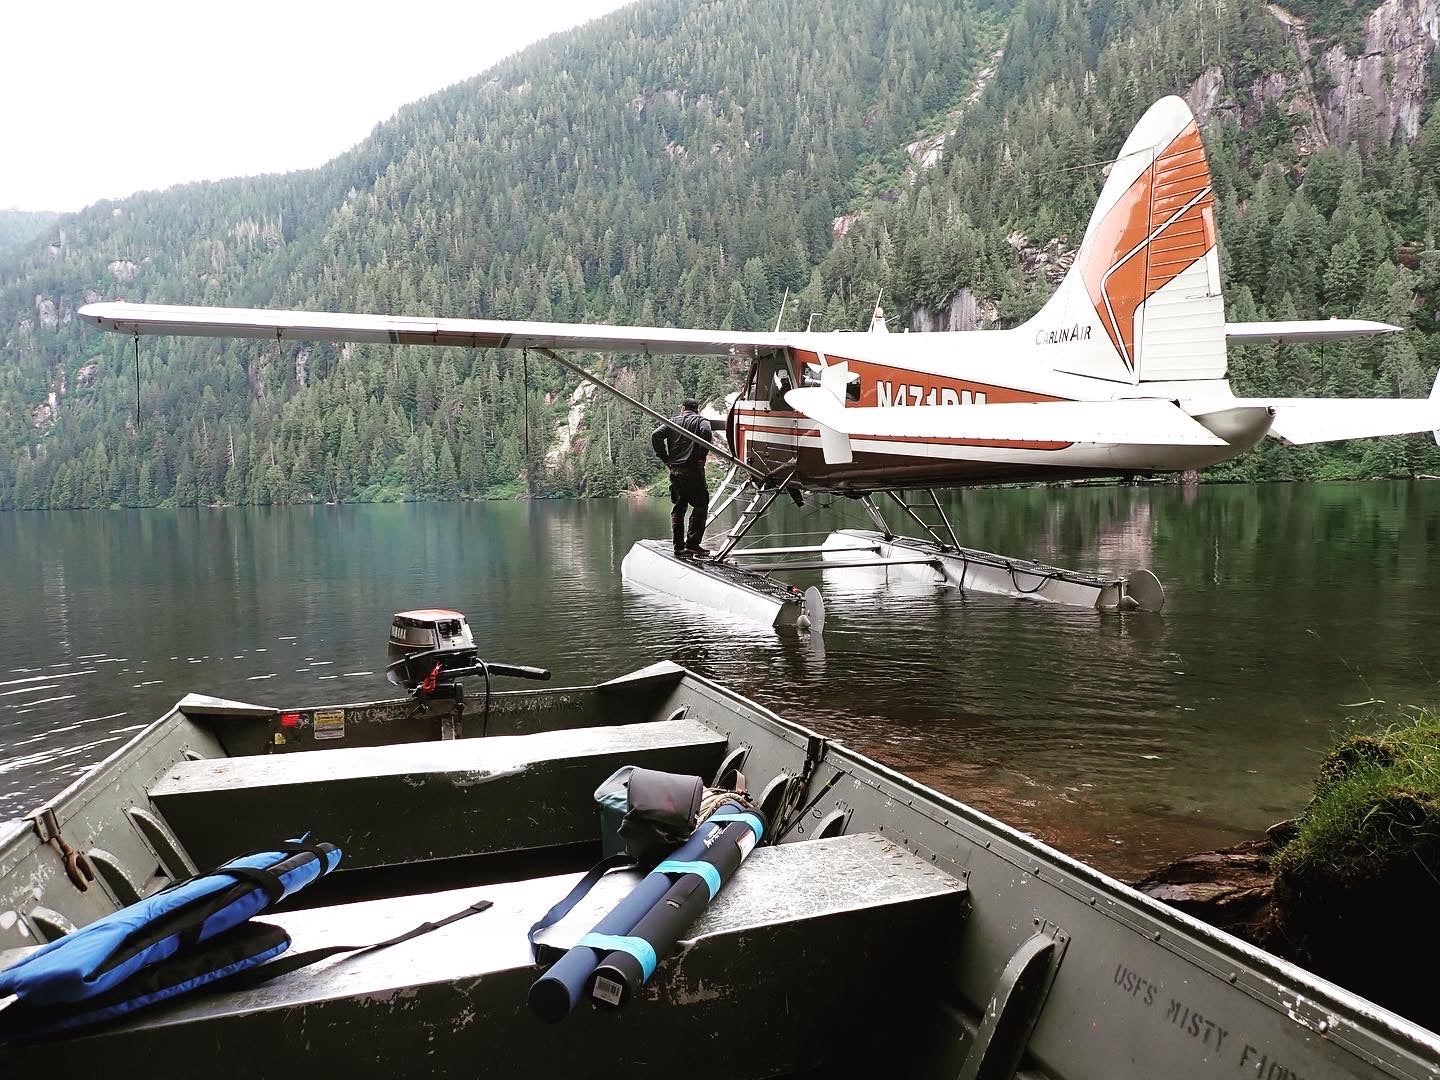 DeHaviland Beaver float plane docked in a lake.